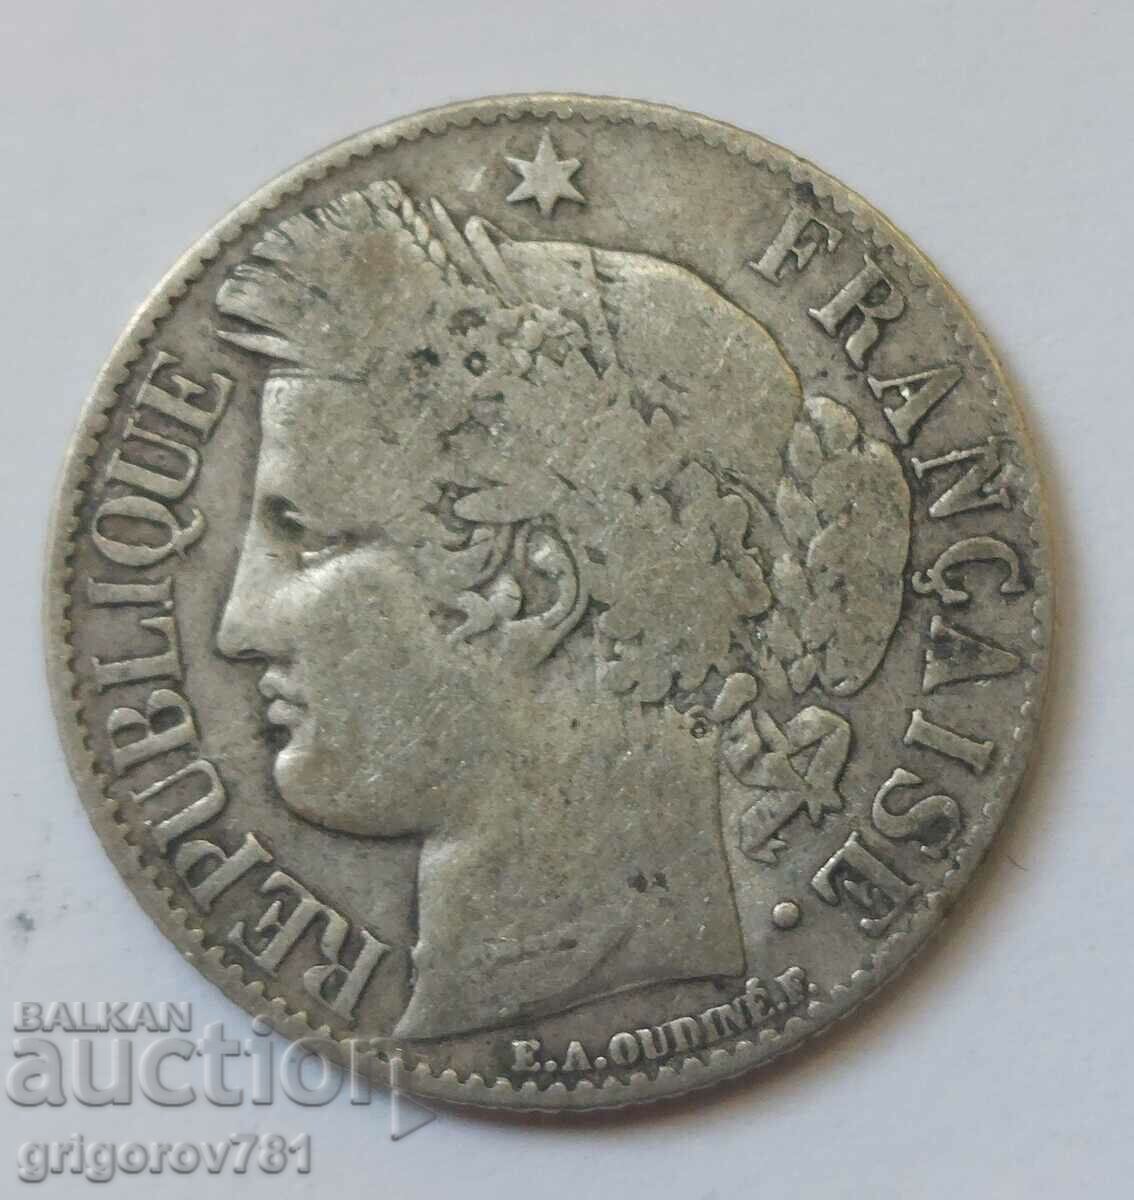 Ασήμι 1 φράγκου Γαλλία 1895 A - Ασημένιο νόμισμα #41